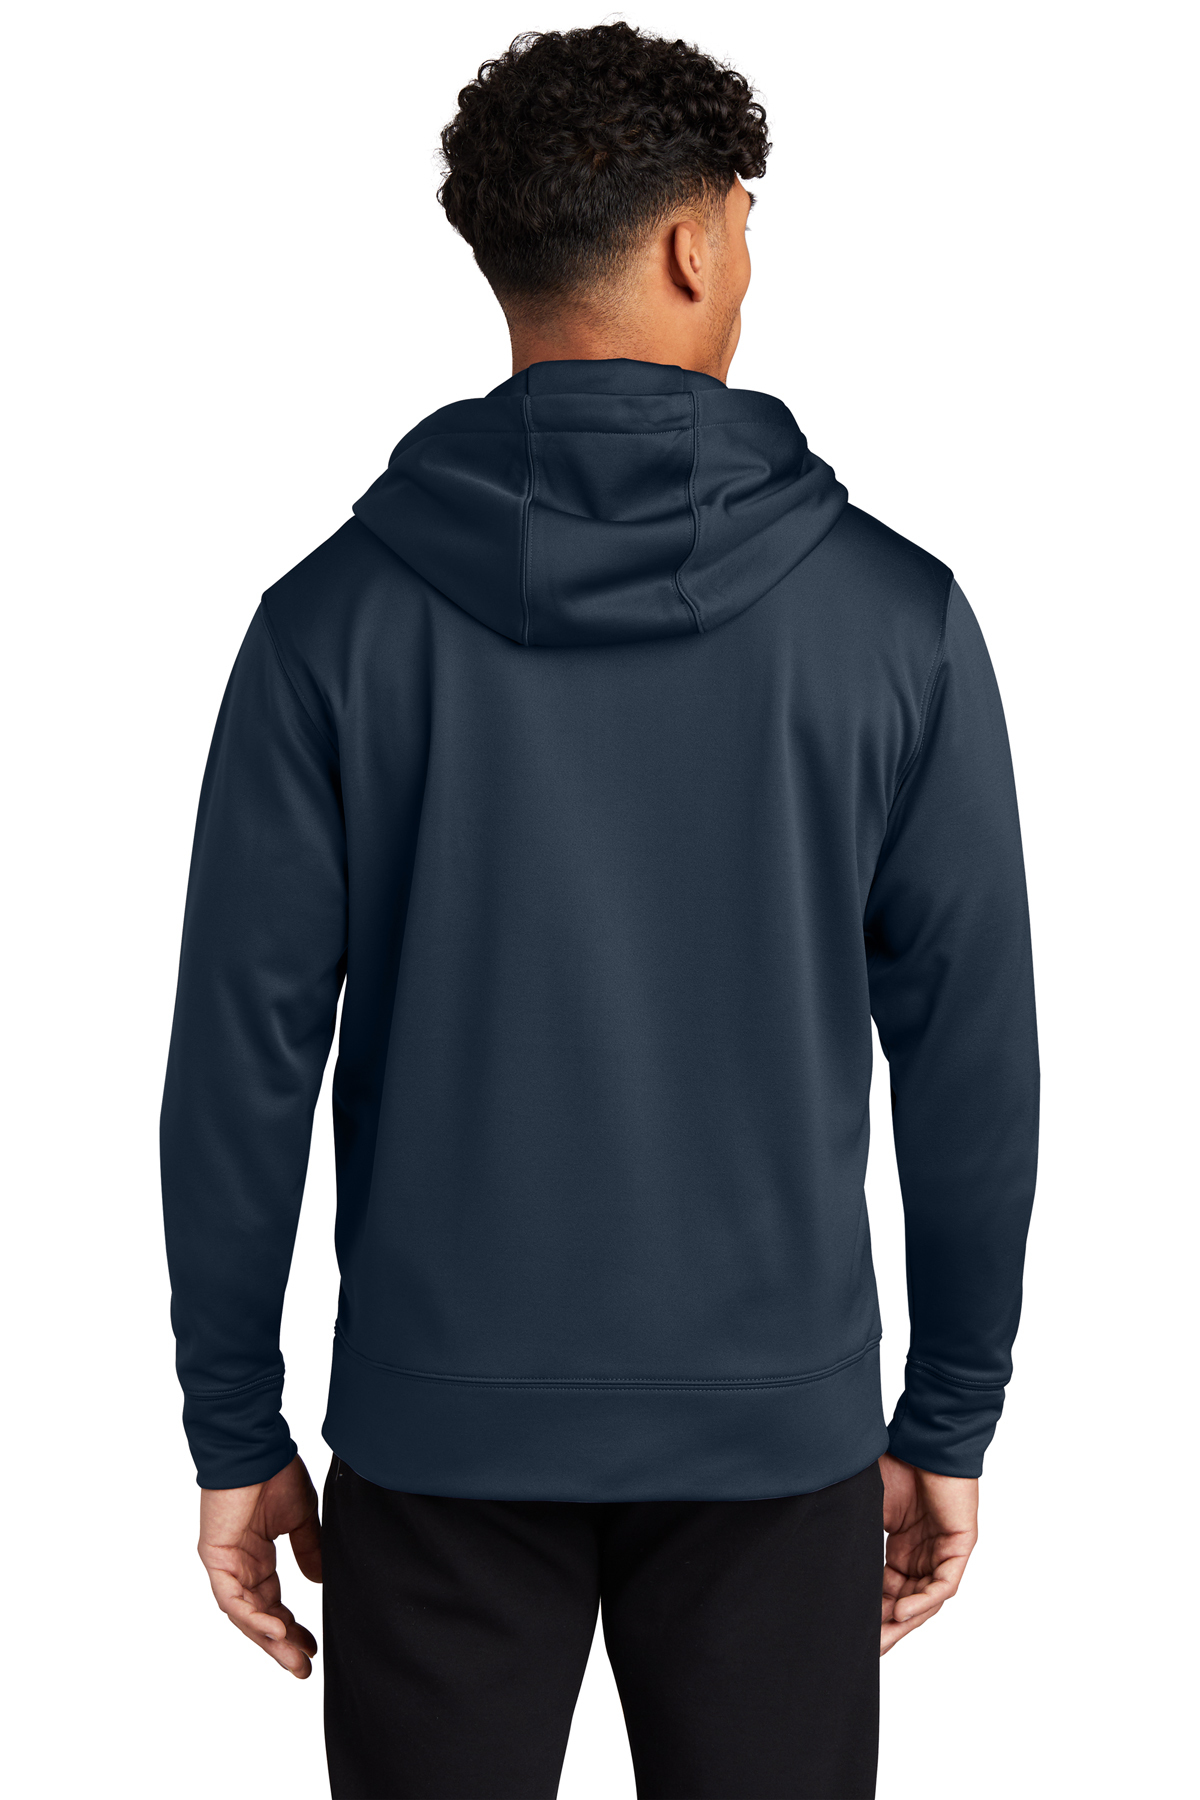 Sport-Tek Sport-Wick Fleece Full-Zip Hooded Jacket | Product | SanMar